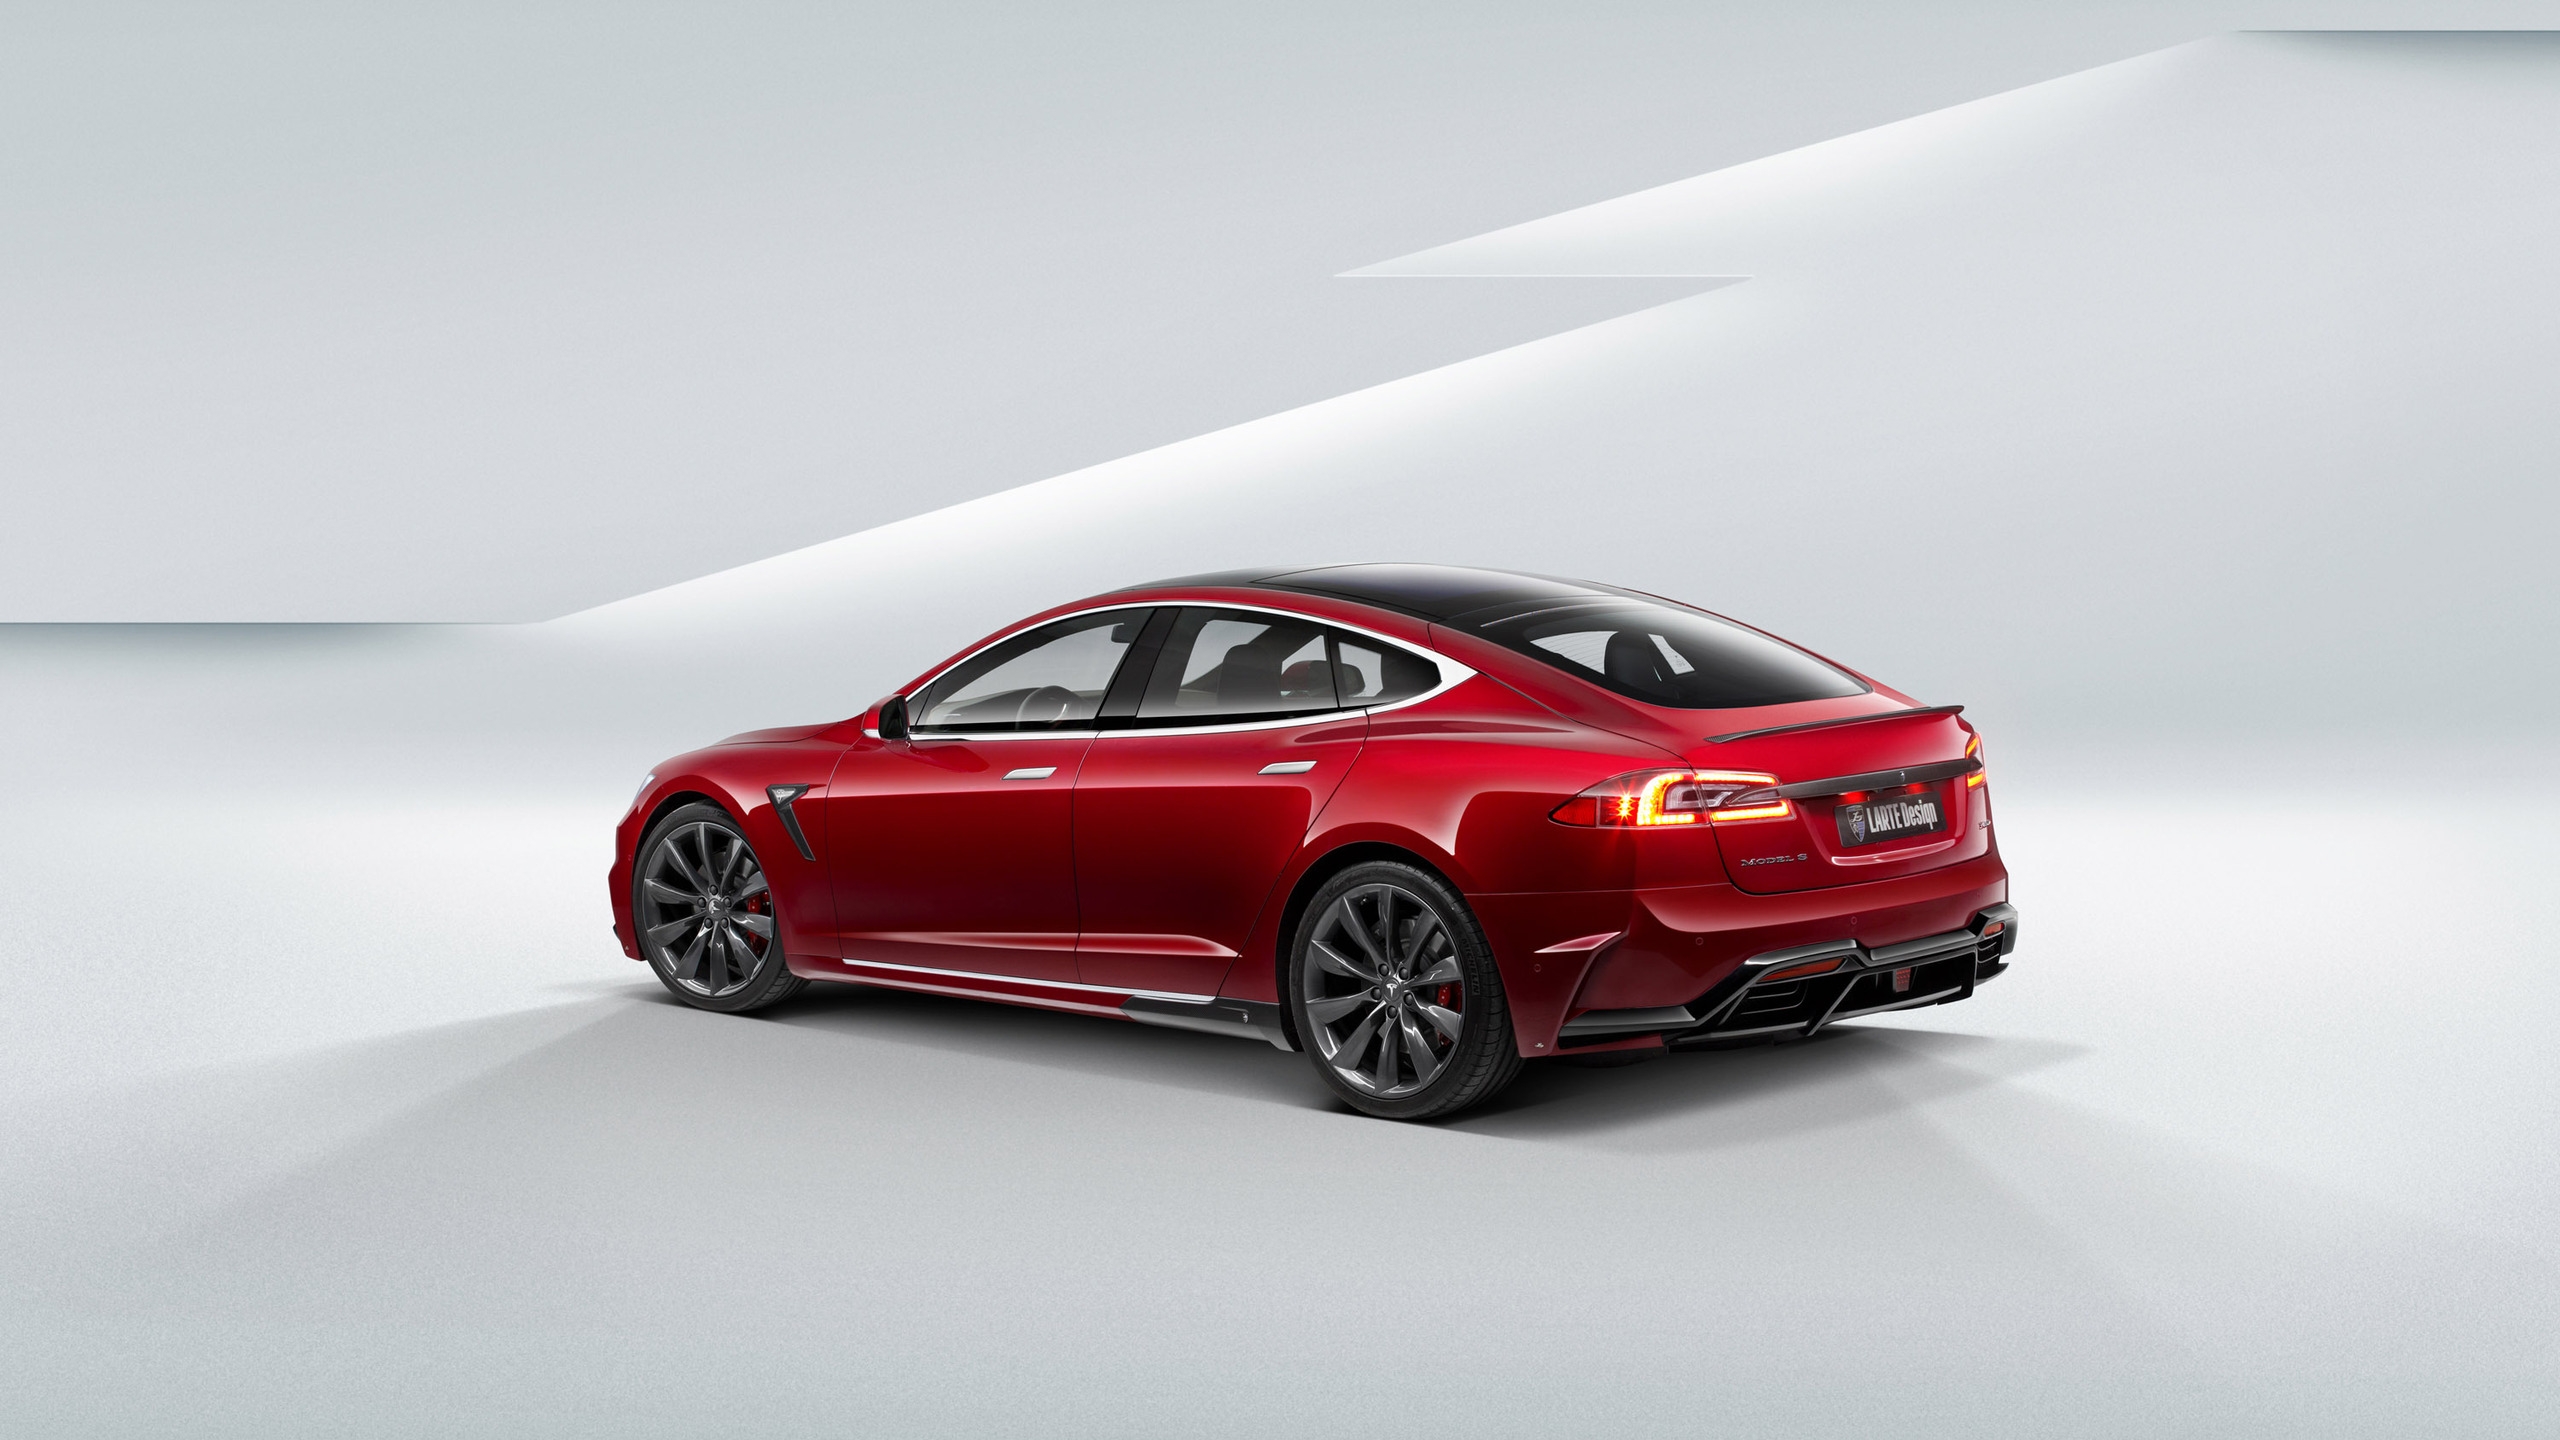 Tesla Model S 2015 for 2560x1440 HDTV resolution